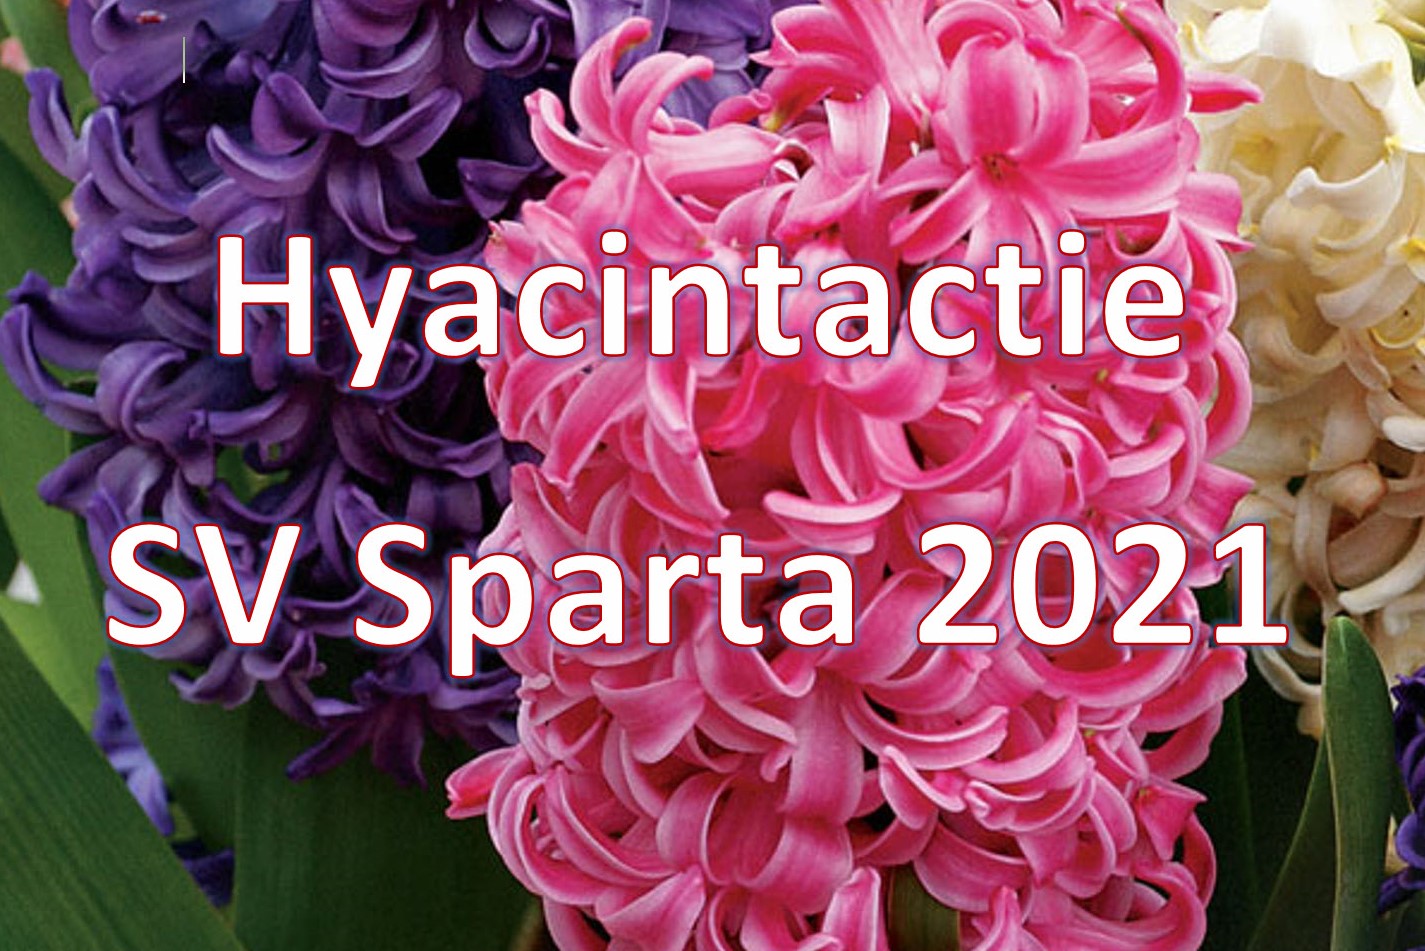 Plaatje Hyacinthactie 2021aaa